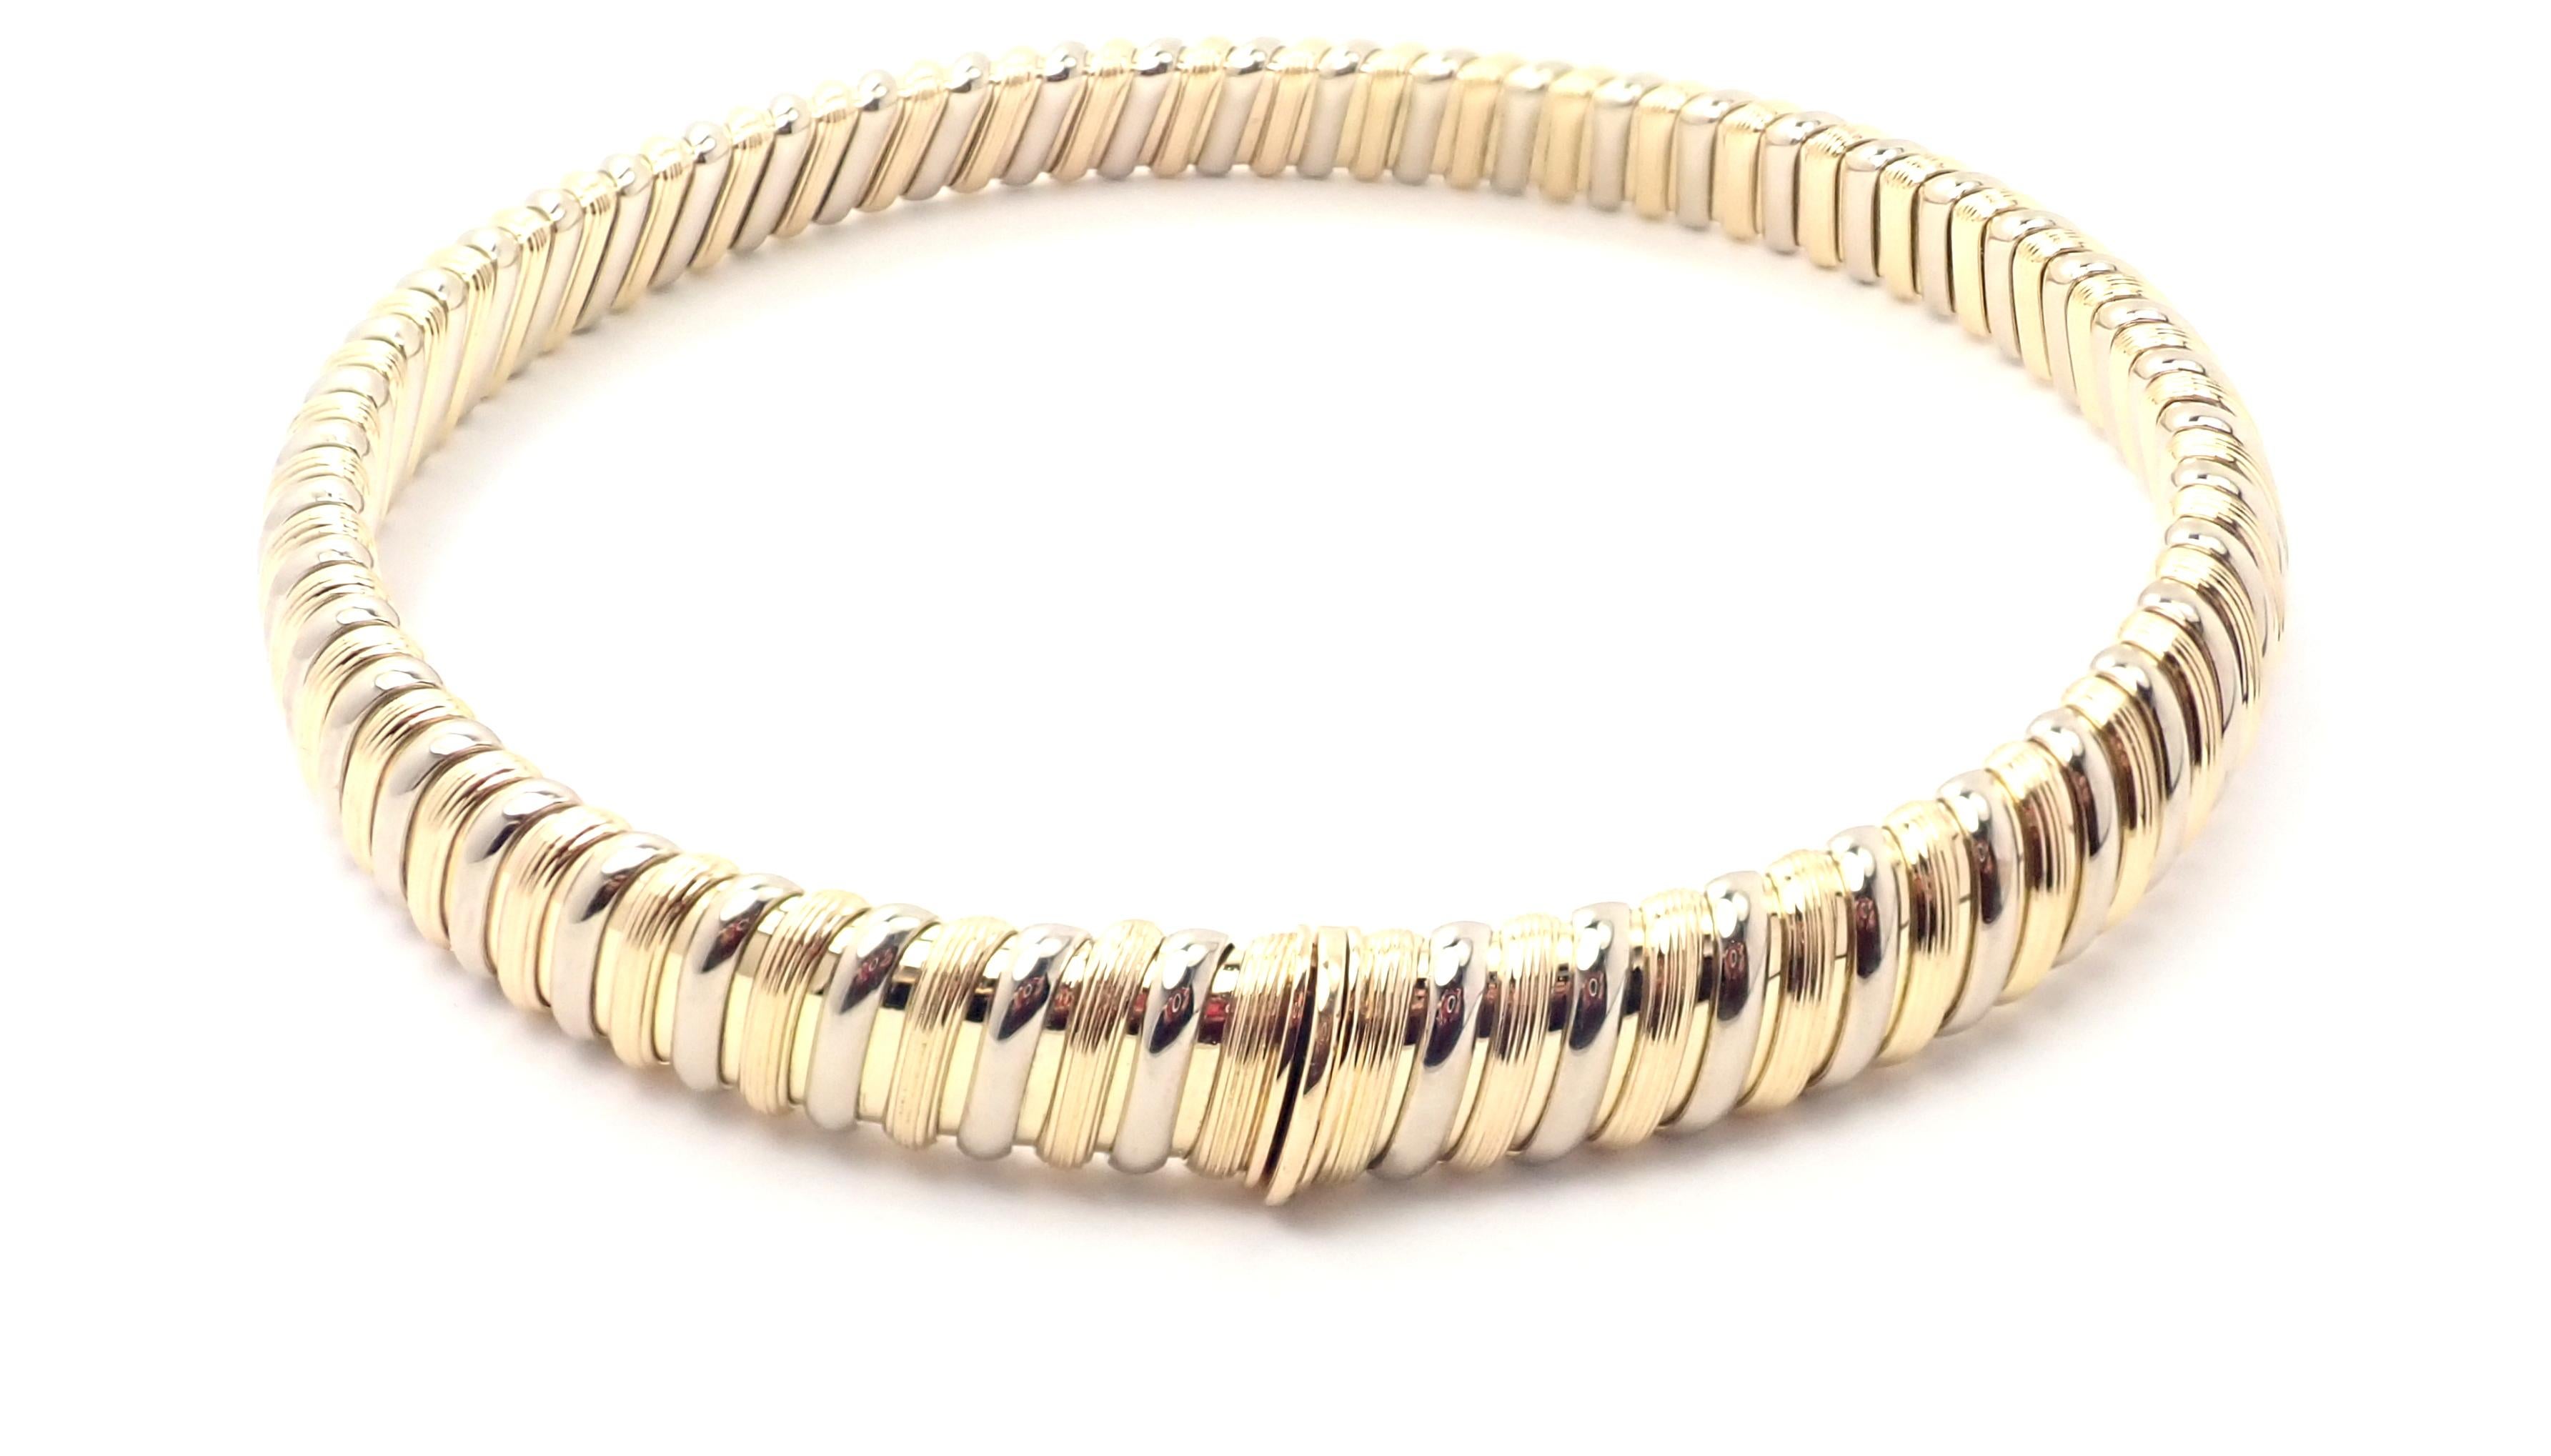 18k Gelb- und Weißgold Tubogas Halskette von Bulgari. 
Einzelheiten: 
Länge: 16 3/4